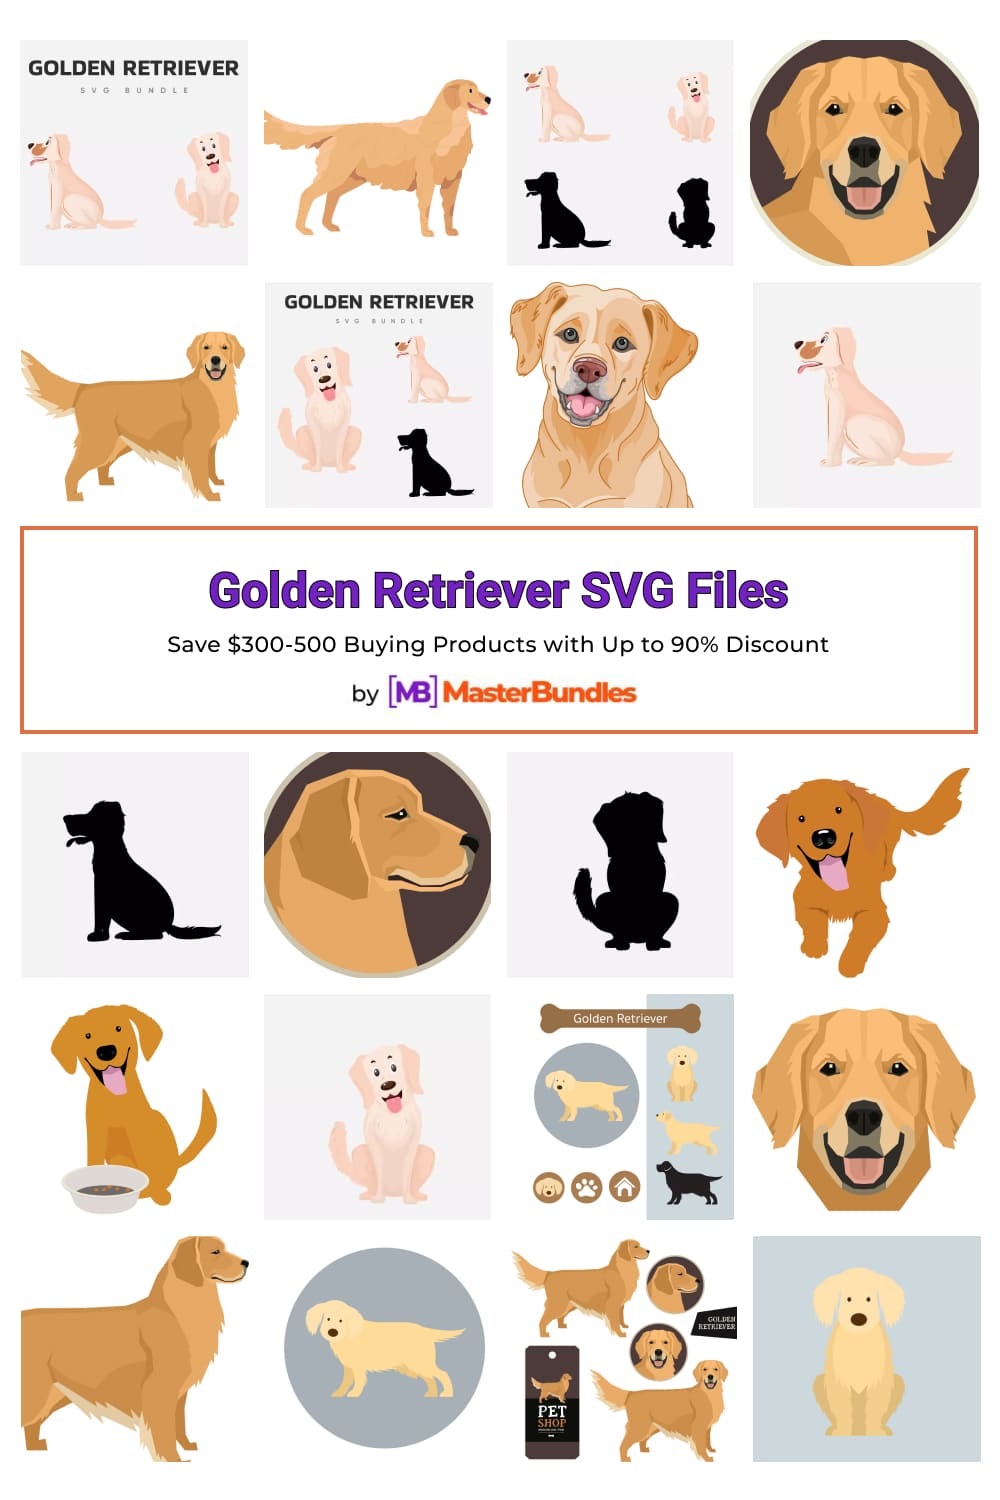 Golden Retriever SVG Files for pinterest.